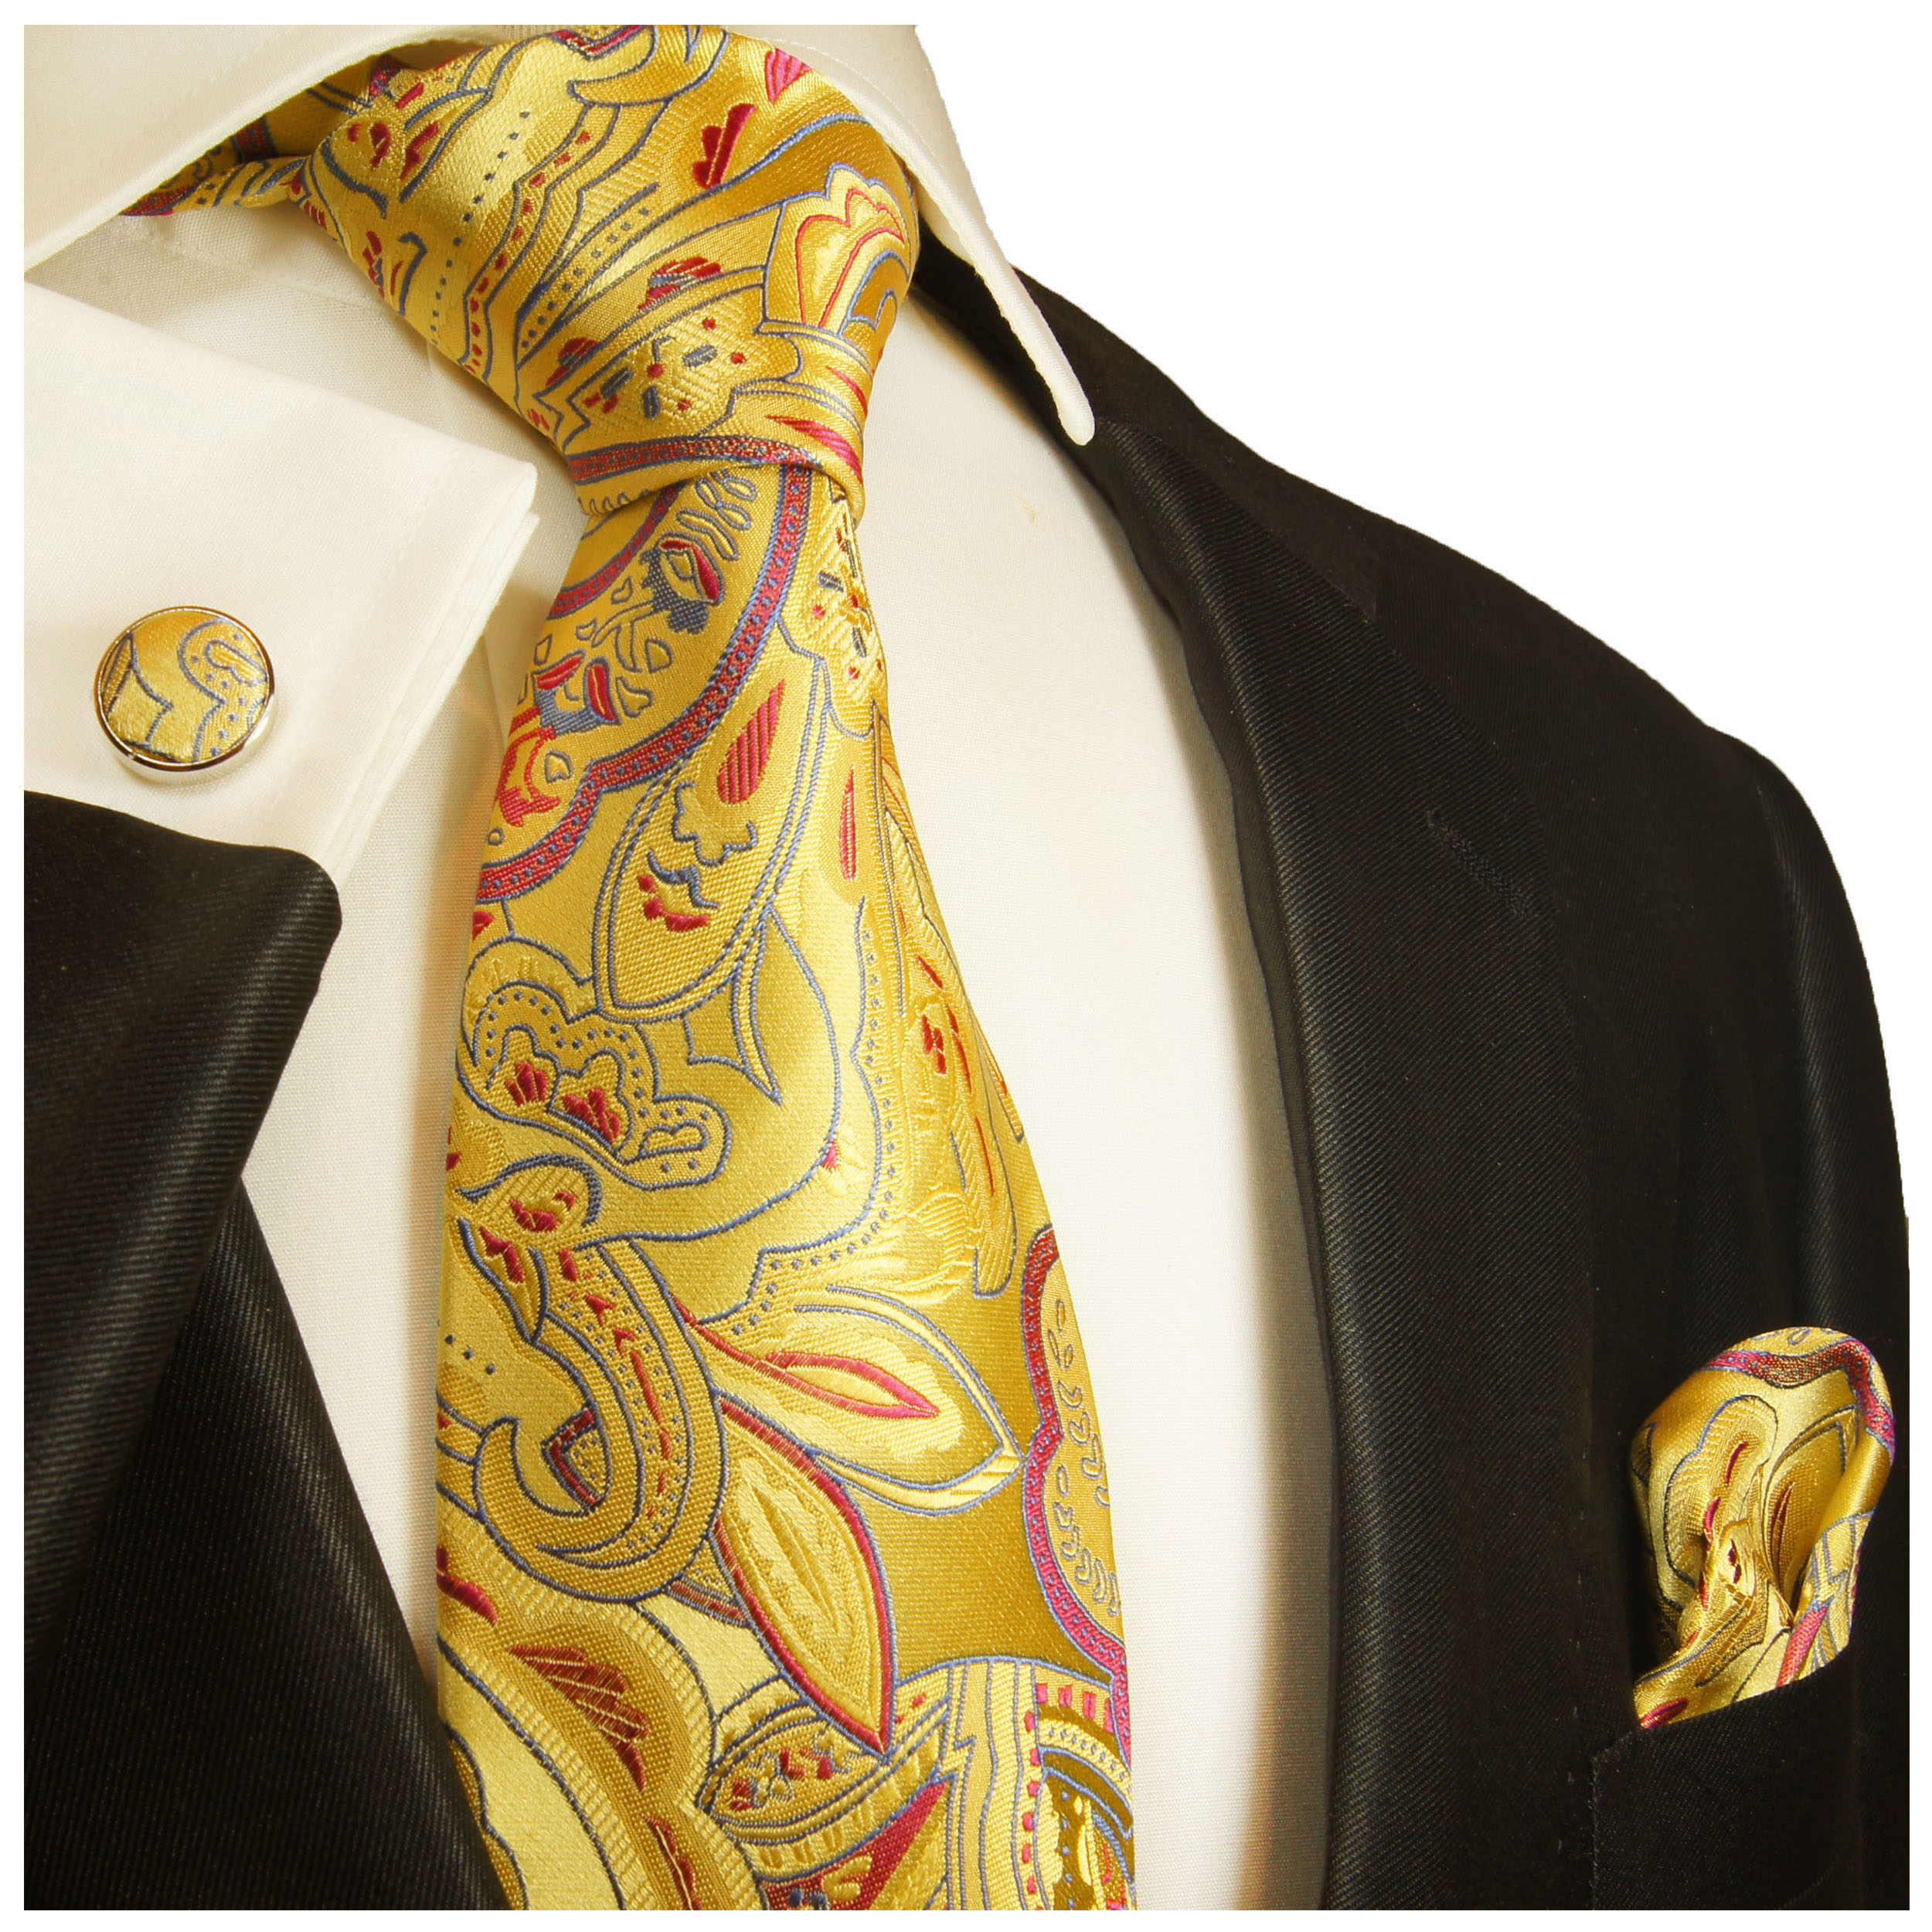 Einstecktuch Paul Malone Krawatten Set 2tlg creme beige florale Seidenkrawatte